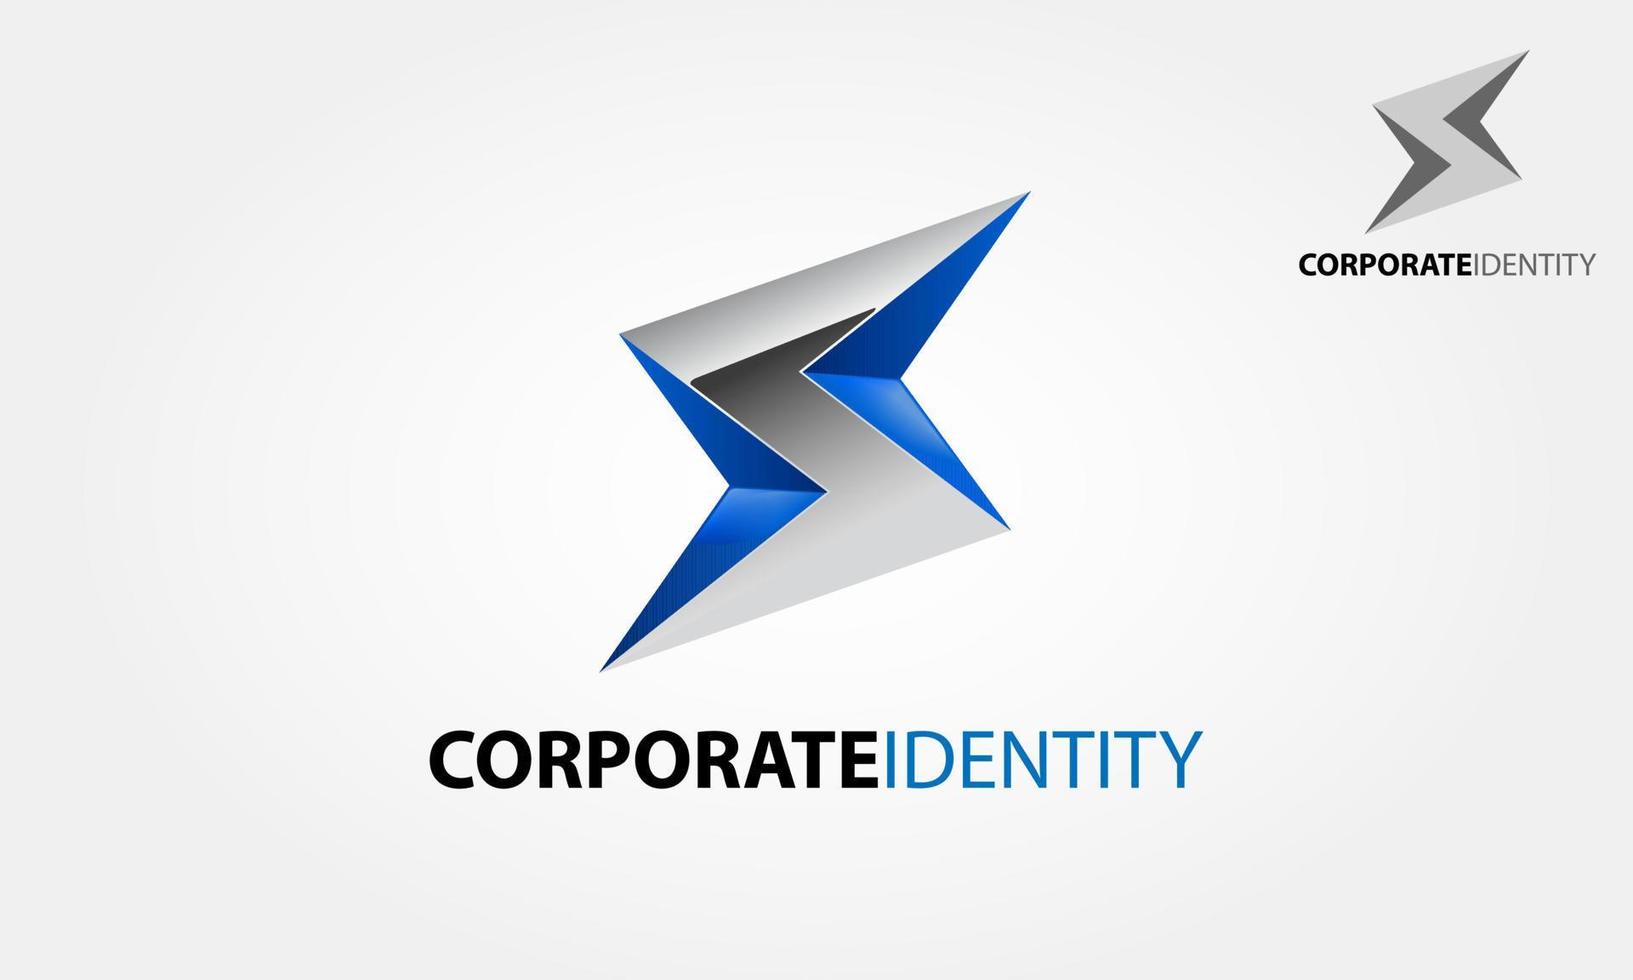 plantilla de logotipo de vector de identidad corporativa. flash de rayo plateado. elemento de vector de diseño de logotipo. diseño de logotipo y símbolo de vector de empresa s.